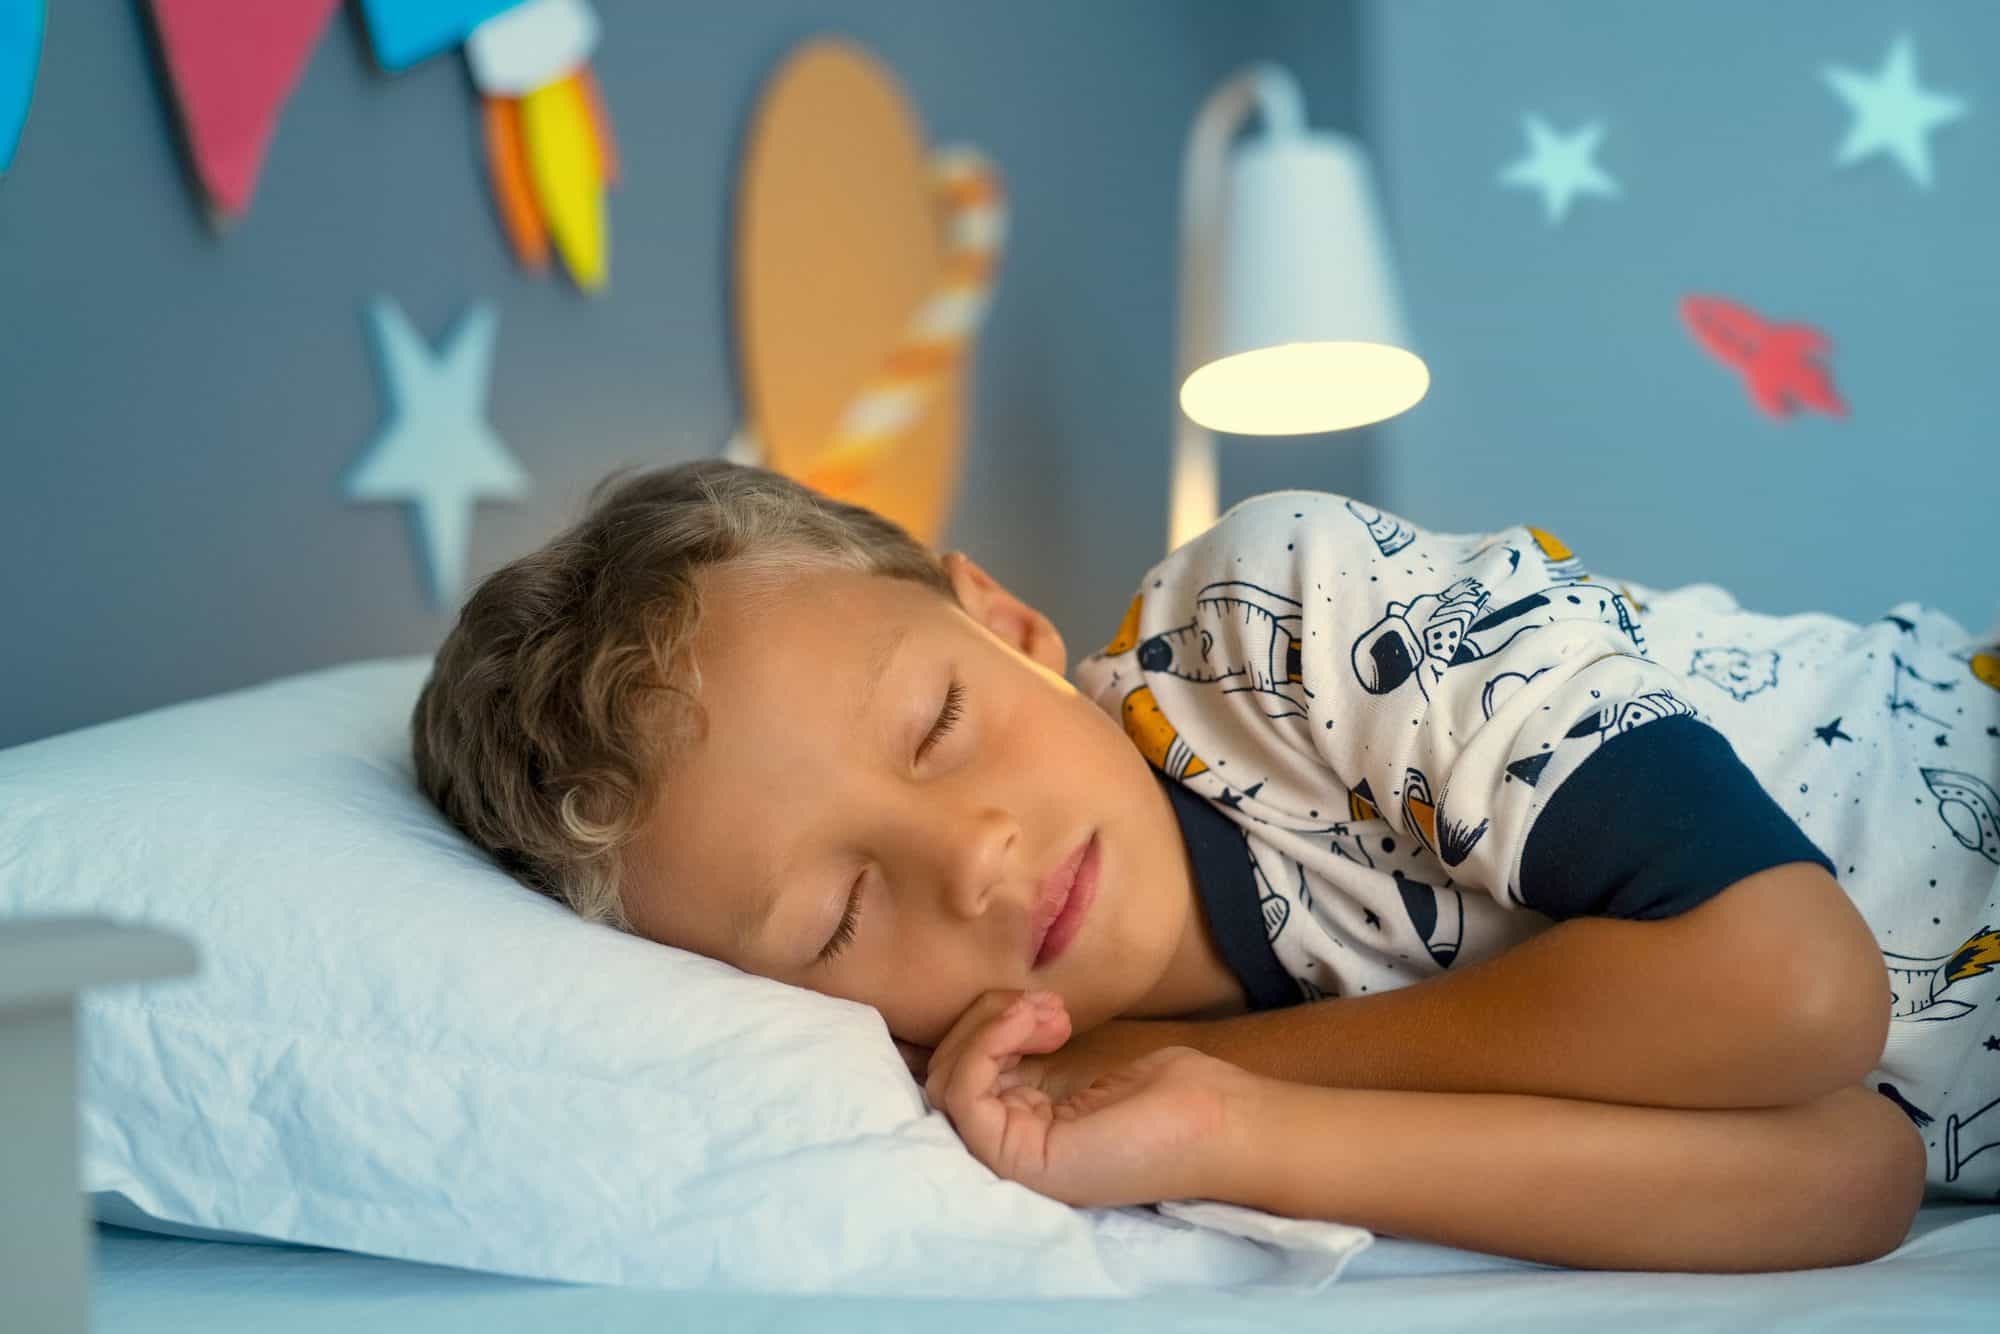 Es bueno que dejemos a los niños dormir con la luz encendida? - Criar con  Sentido Común